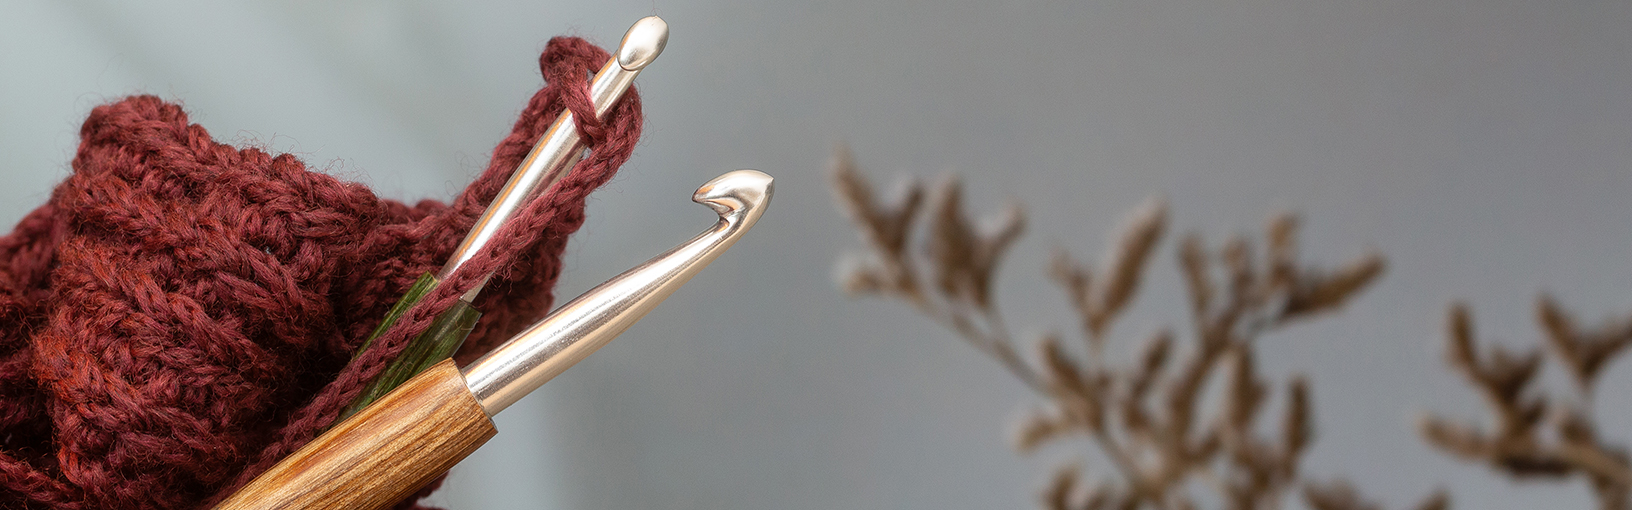 Garne zum Stricken, Häkeln und Filzen in bester Qualität LANA GROSSA<br> Wolle & Garne | Tweed